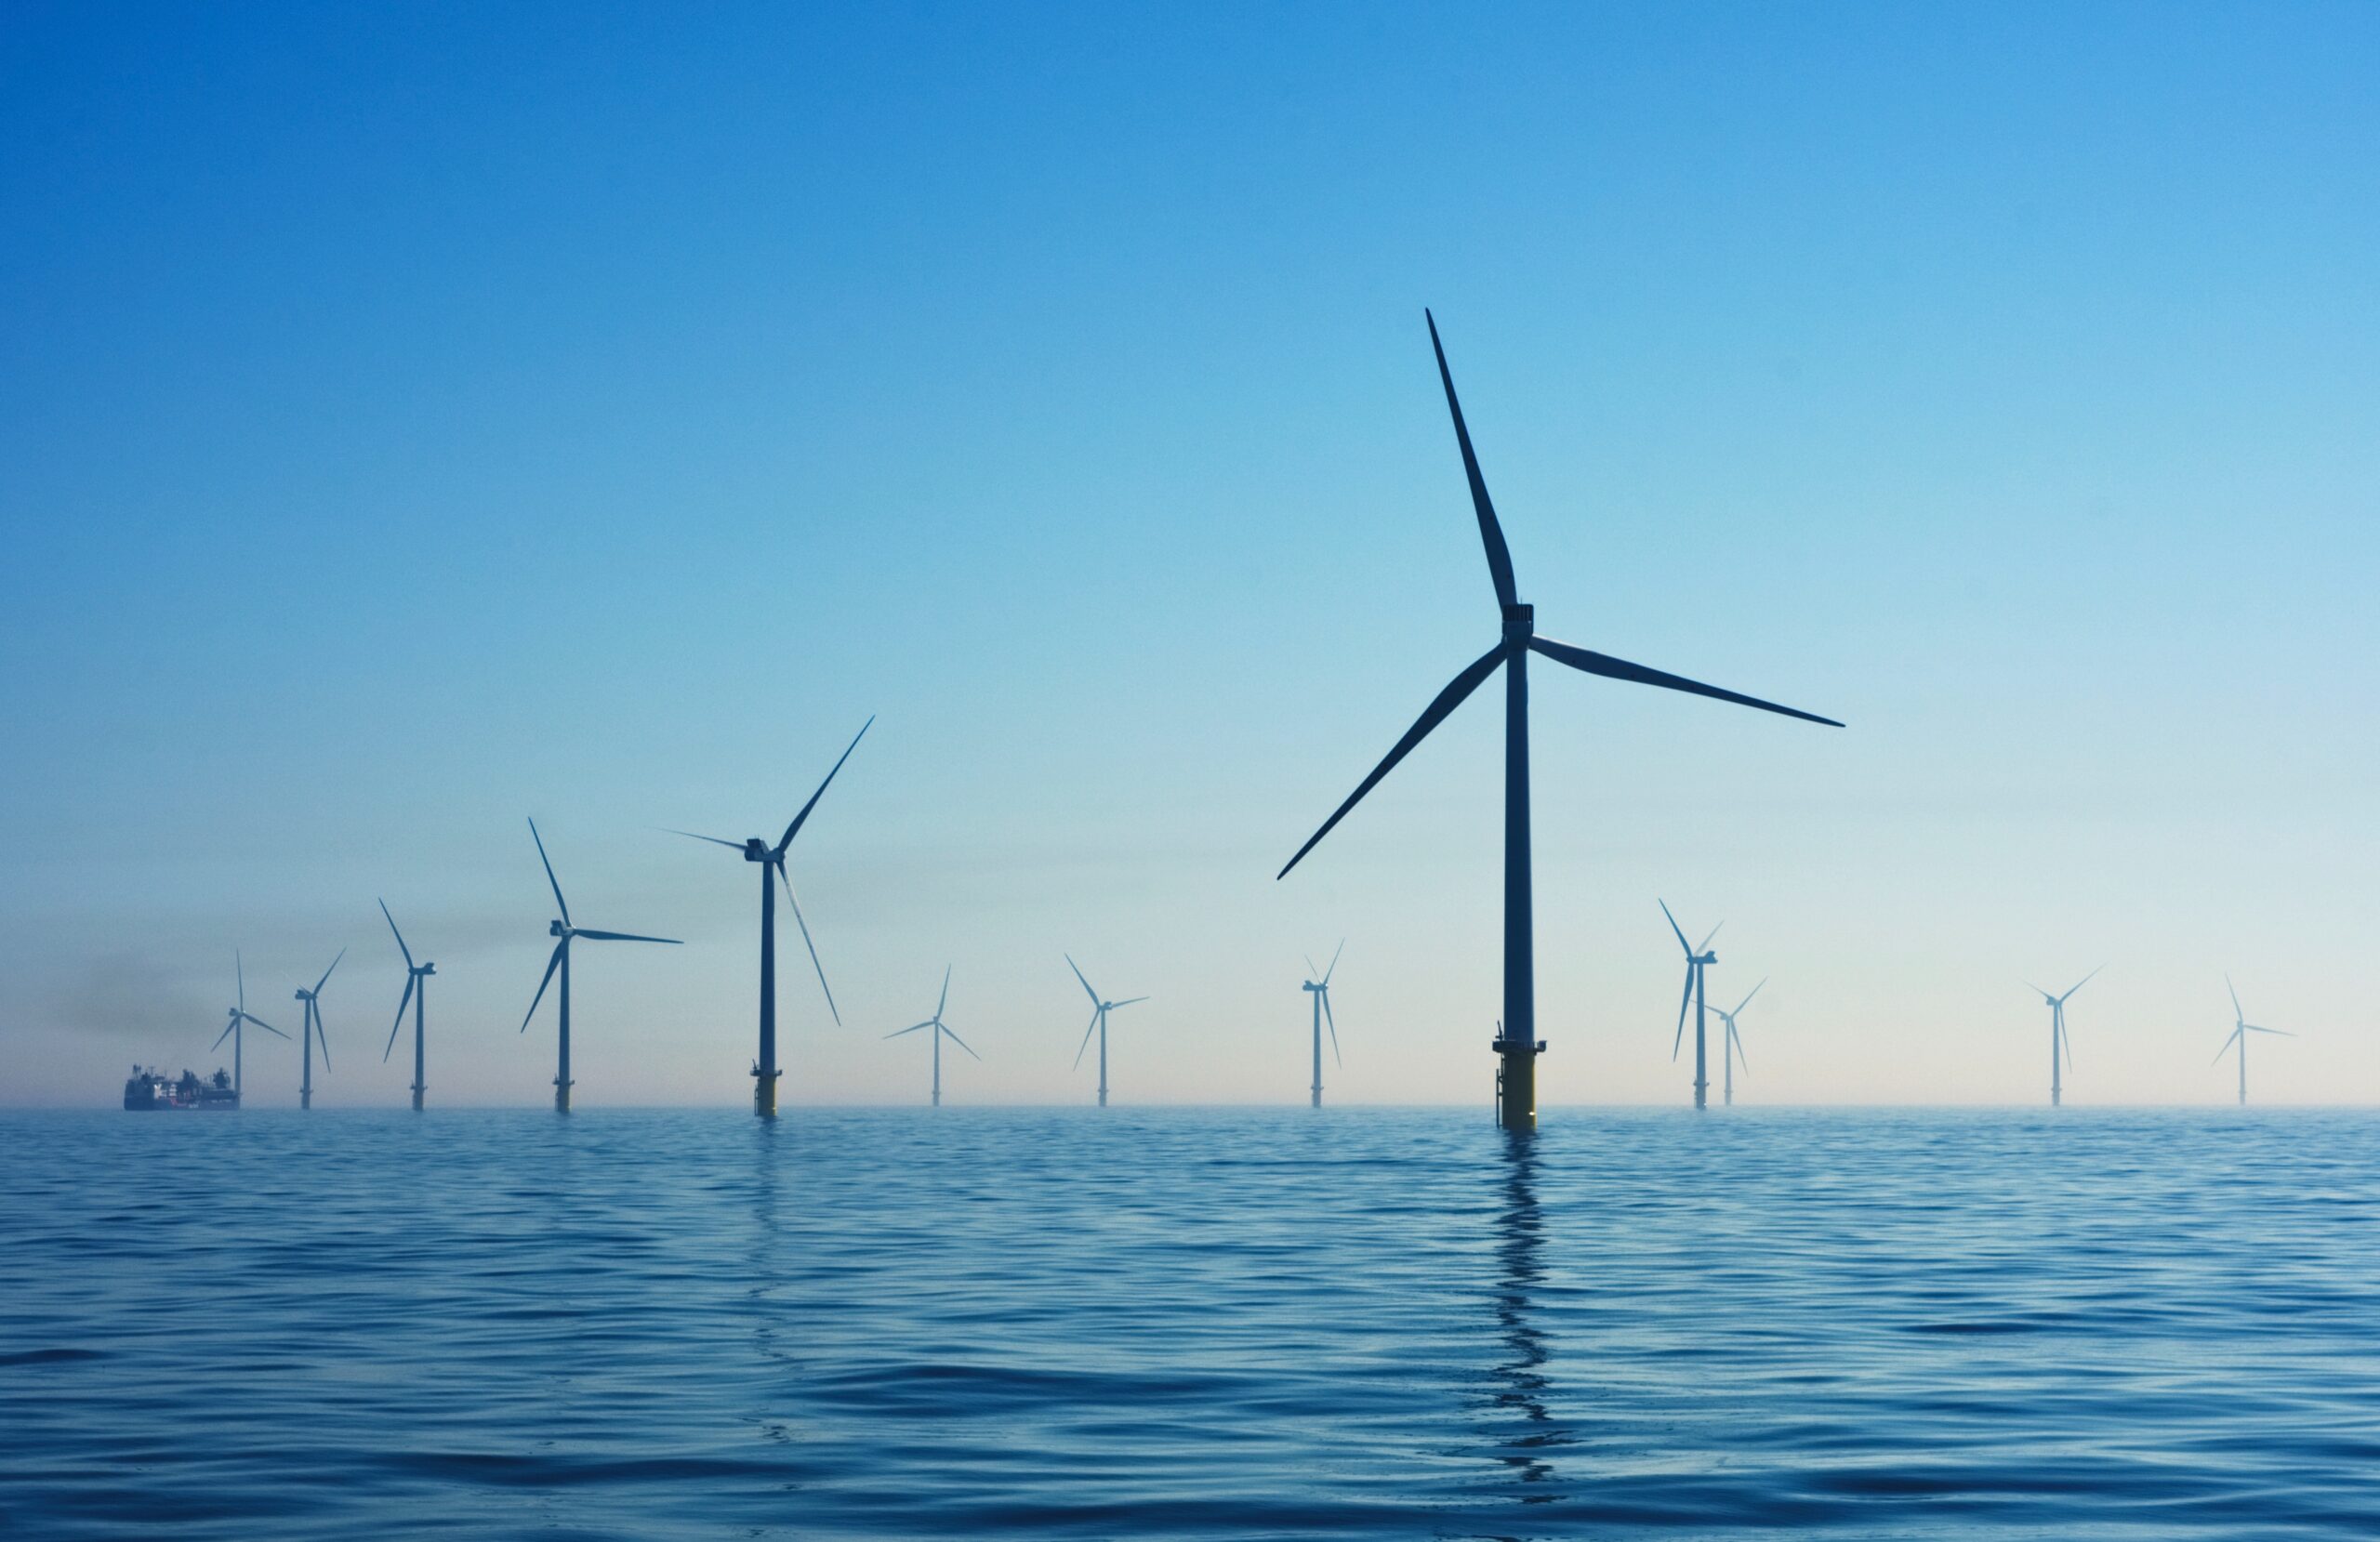 nicholas doherty pONBhDyOFoM unsplash scaled - Morska energia wiatrowa Power-to-X i produkcja zielonego wodoru w Danii